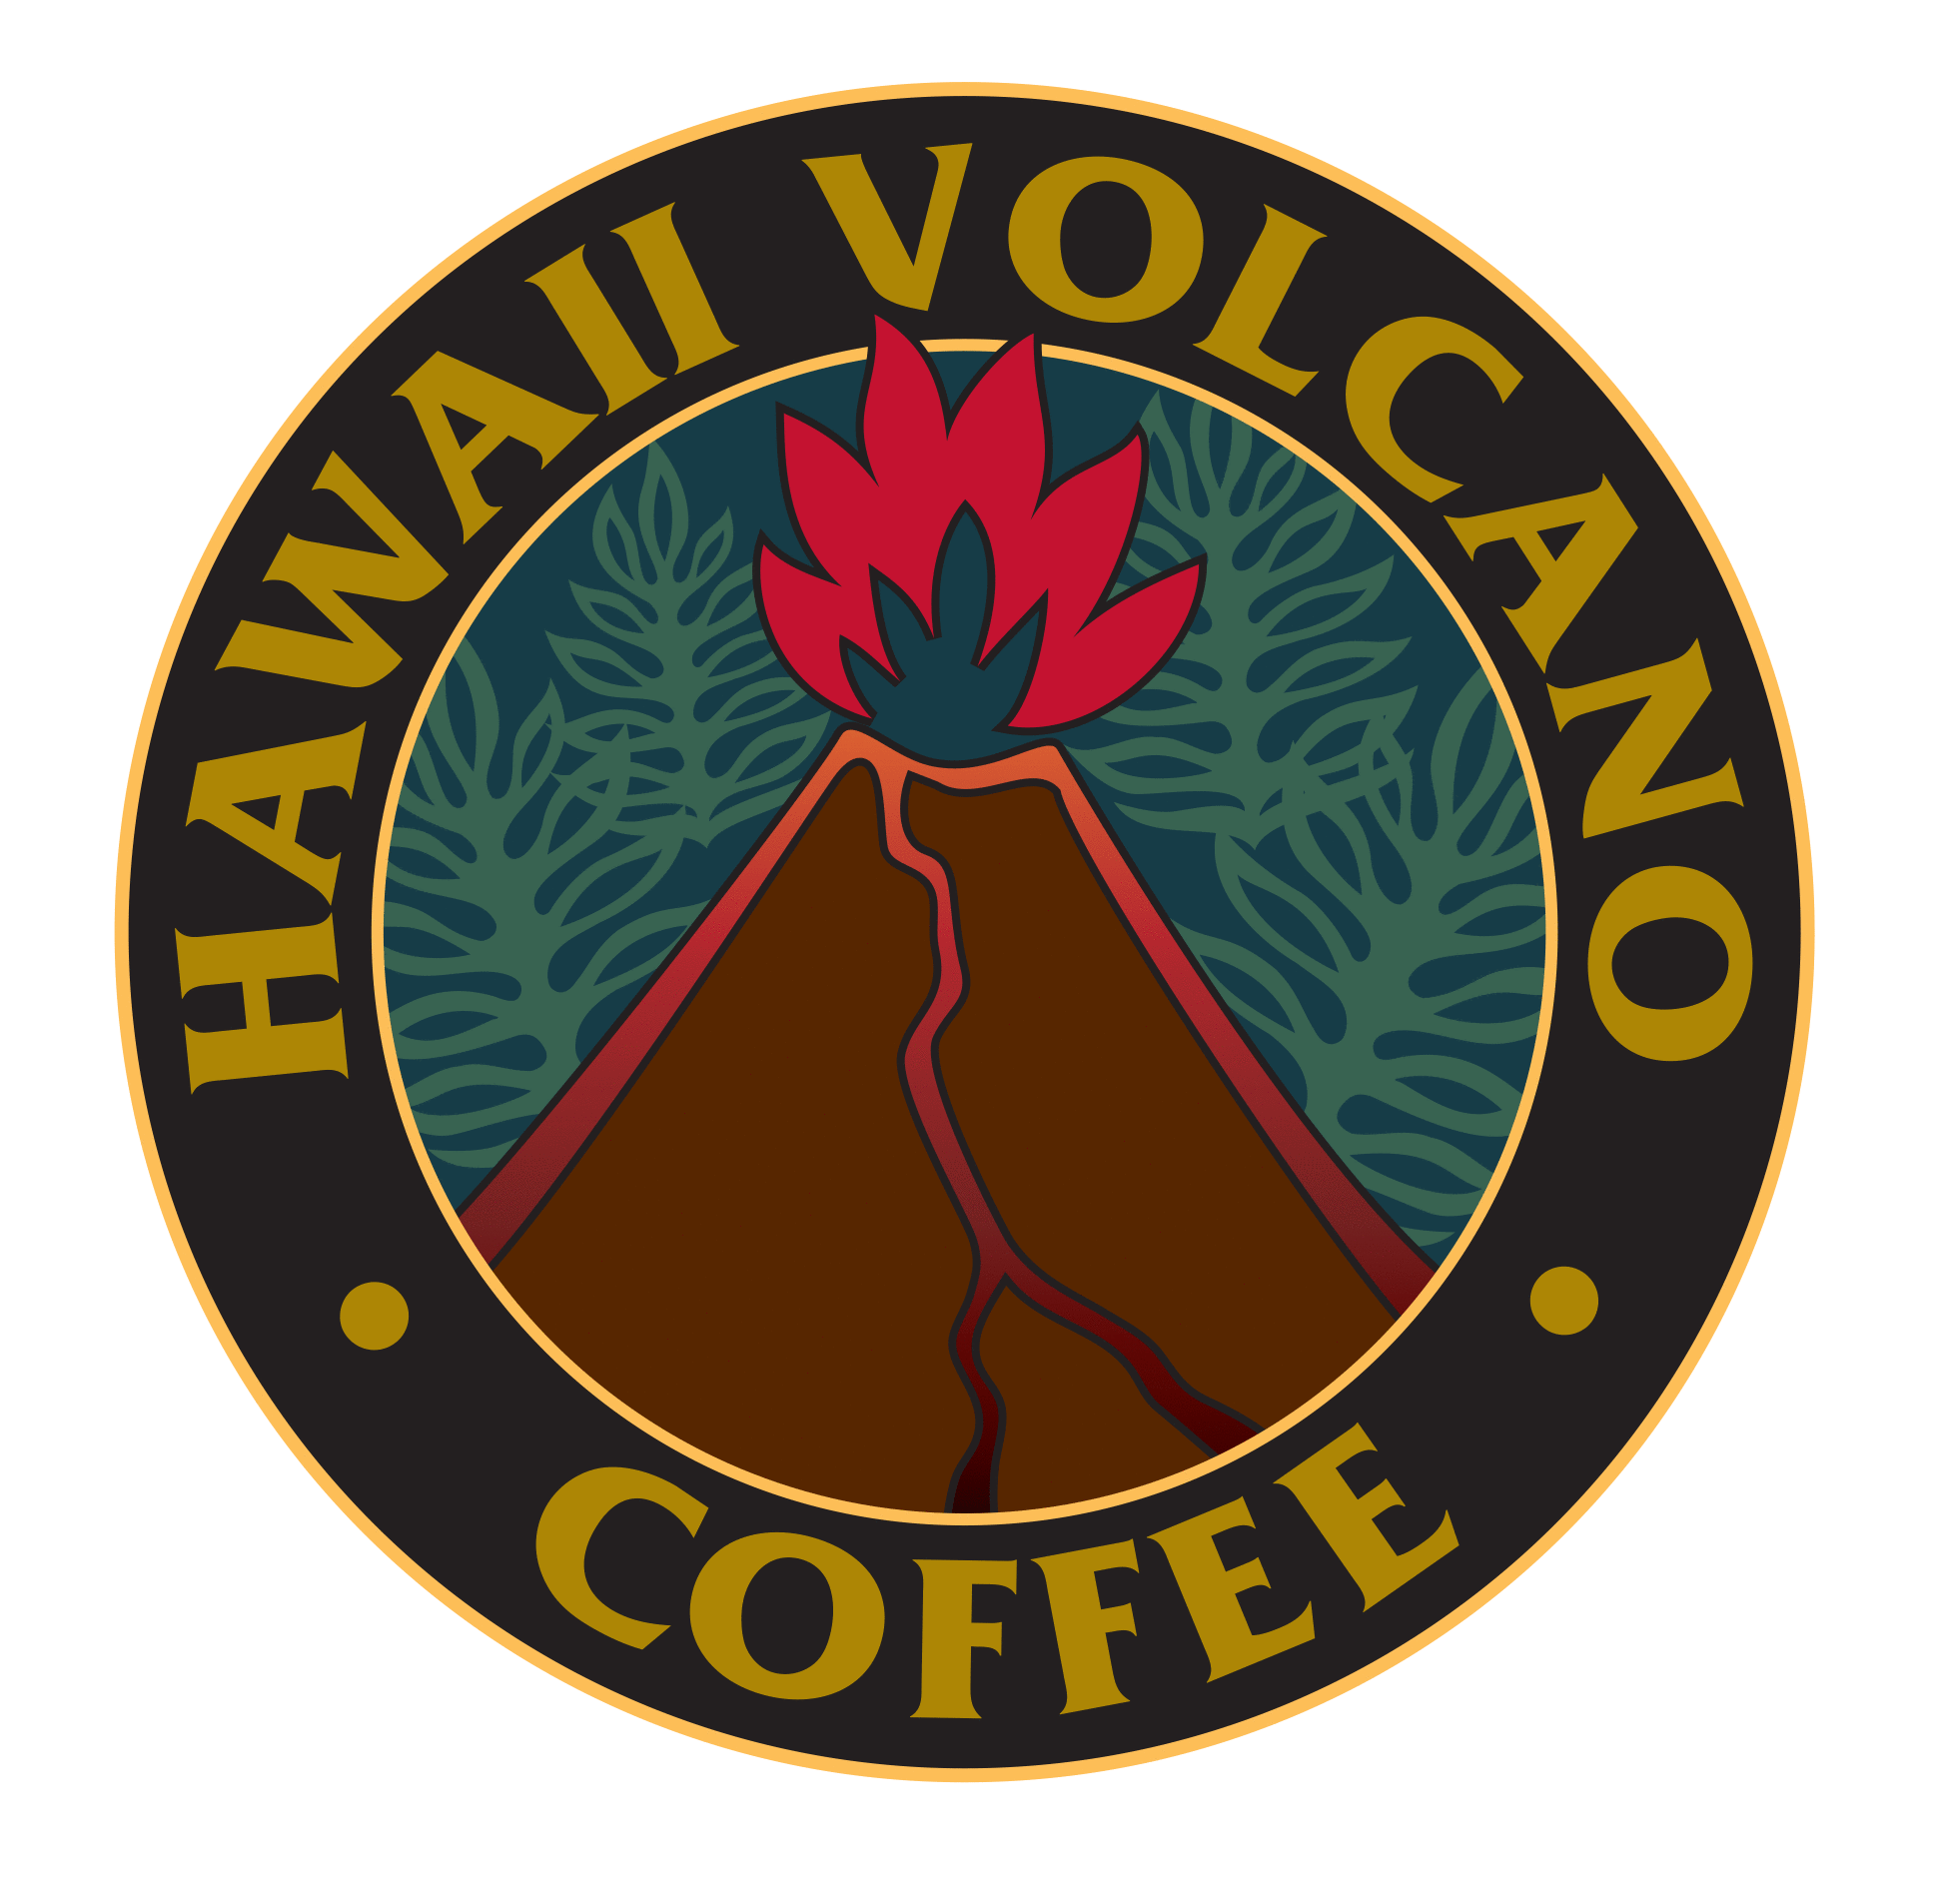 Hawaii Volcano Coffee